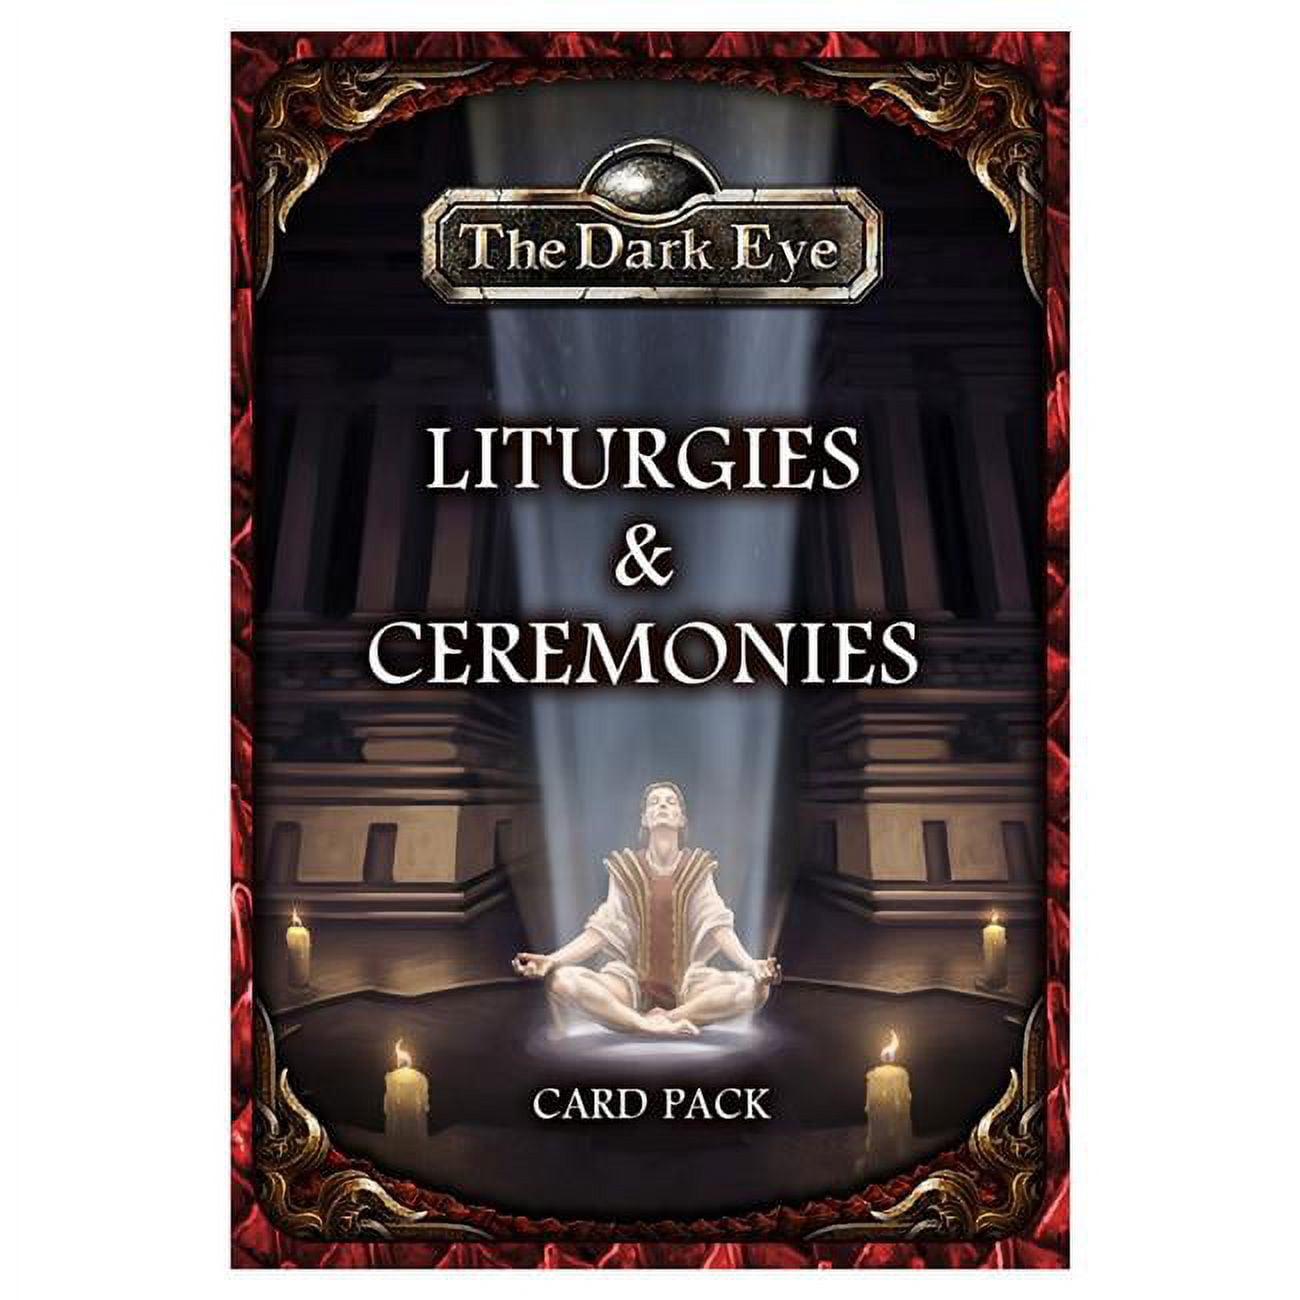 The Dark Eye Card Pack - Liturgies & Ceremonies